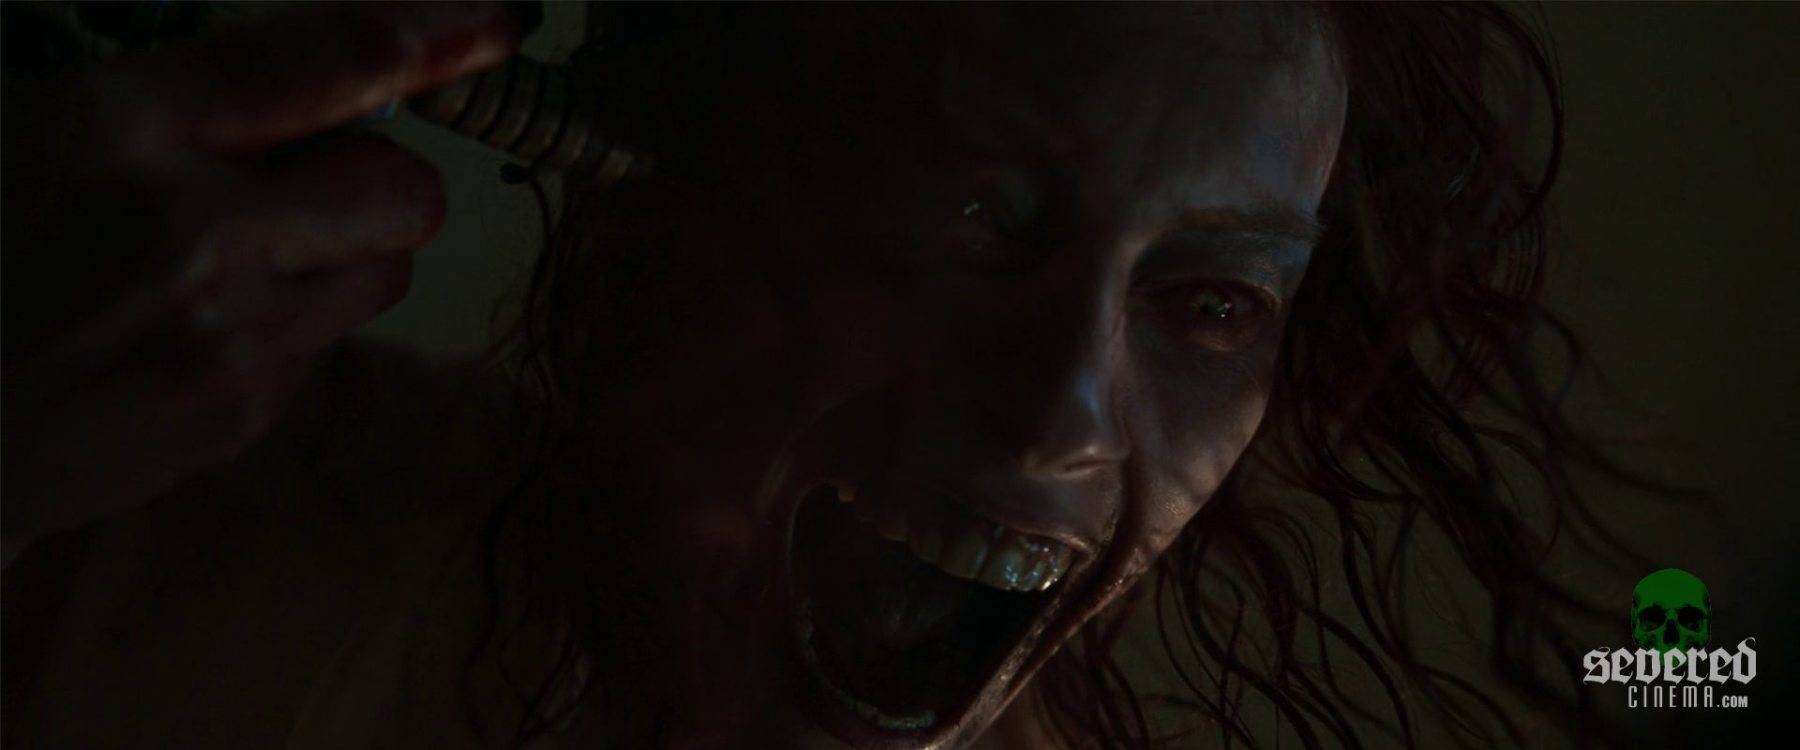 Evil Dead Rise – Final Review Trailer 